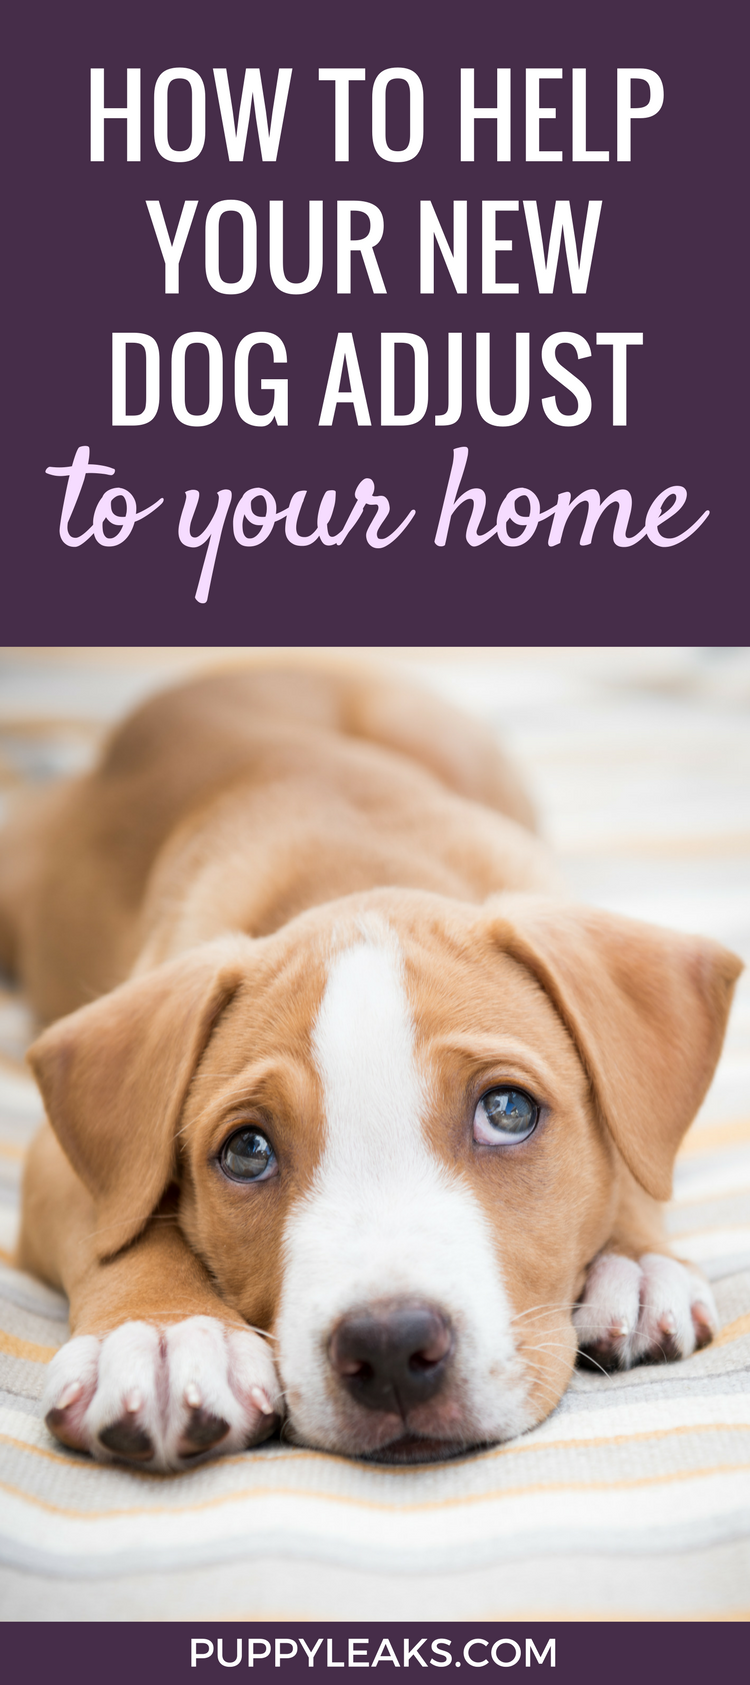 강아지가 집에 적응하는 데 도움이 되는 10가지 팁